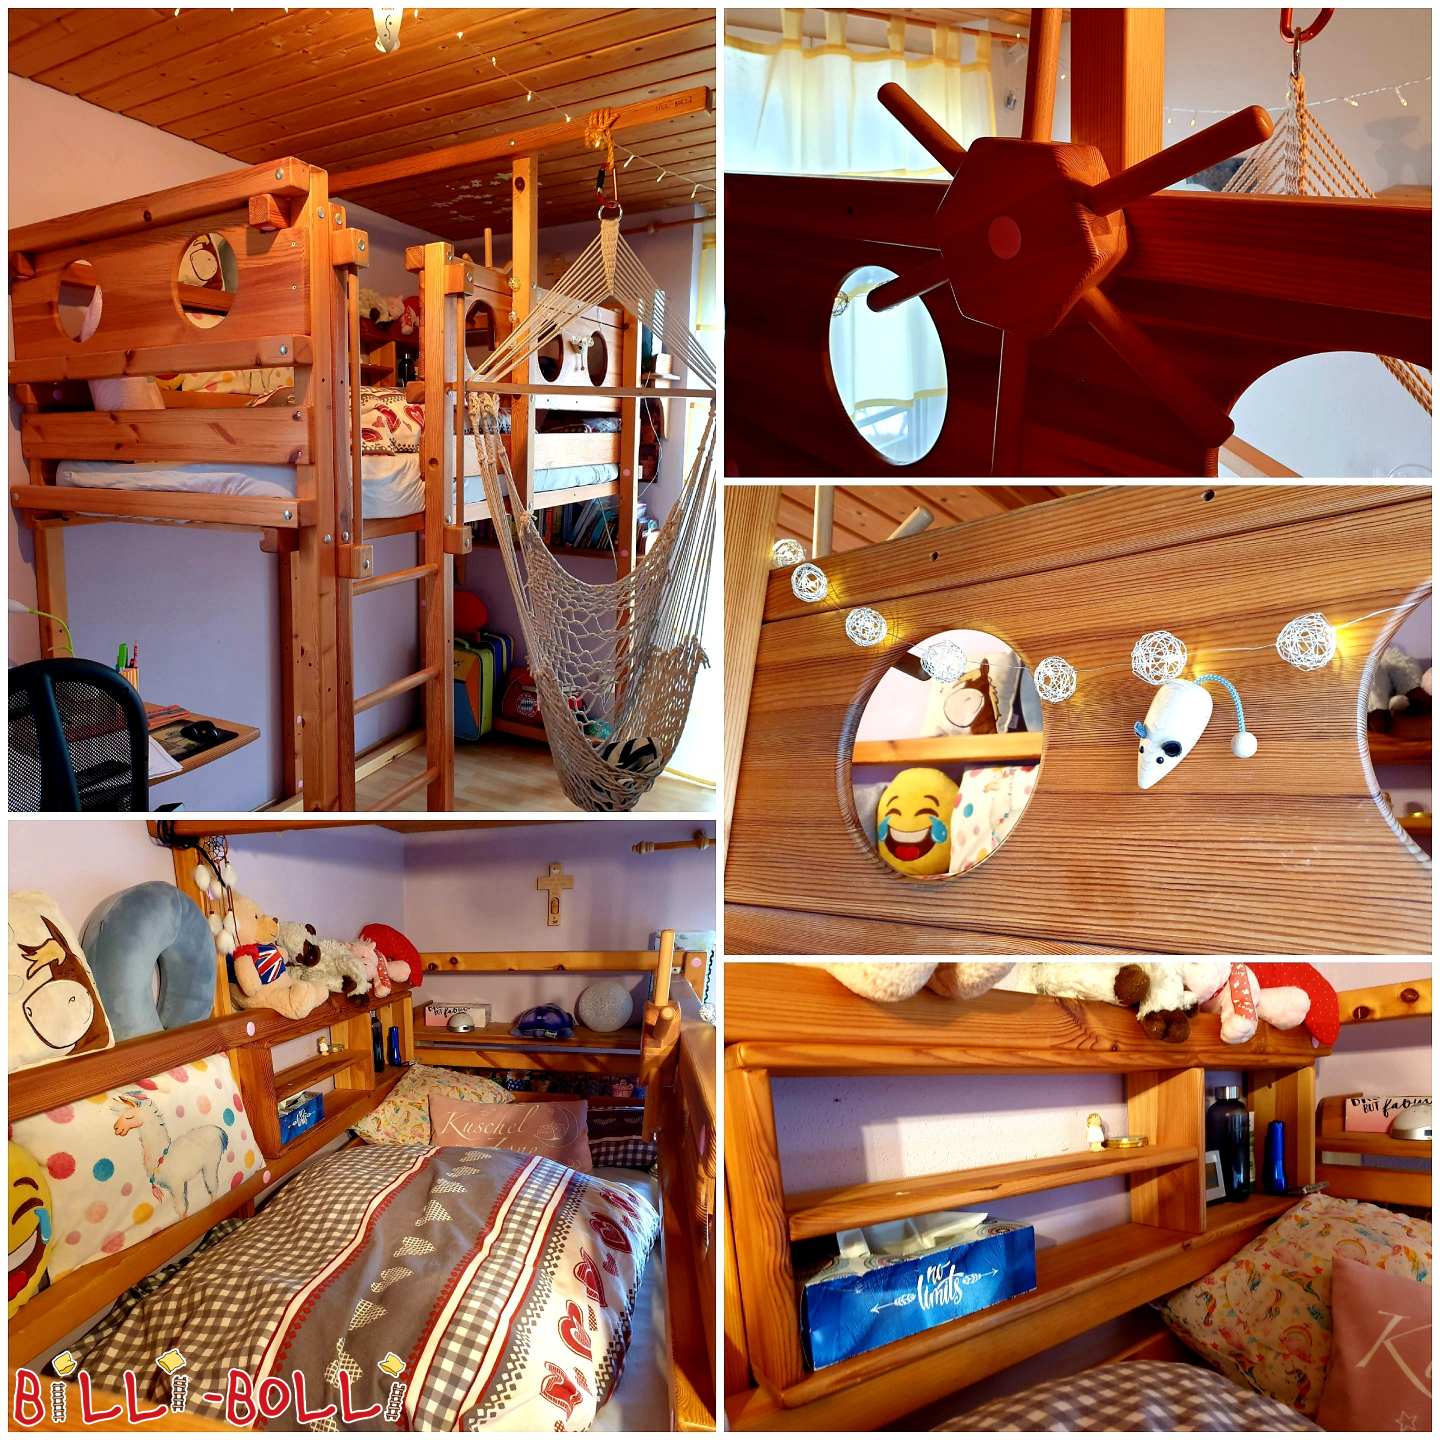 Loft yatak 90x200 cm, çam yağ balmumu tedavisi ile işlenmemiş (Kategori: Çocukla birlikte büyüyen çatı katı yatağı kullanılmış)